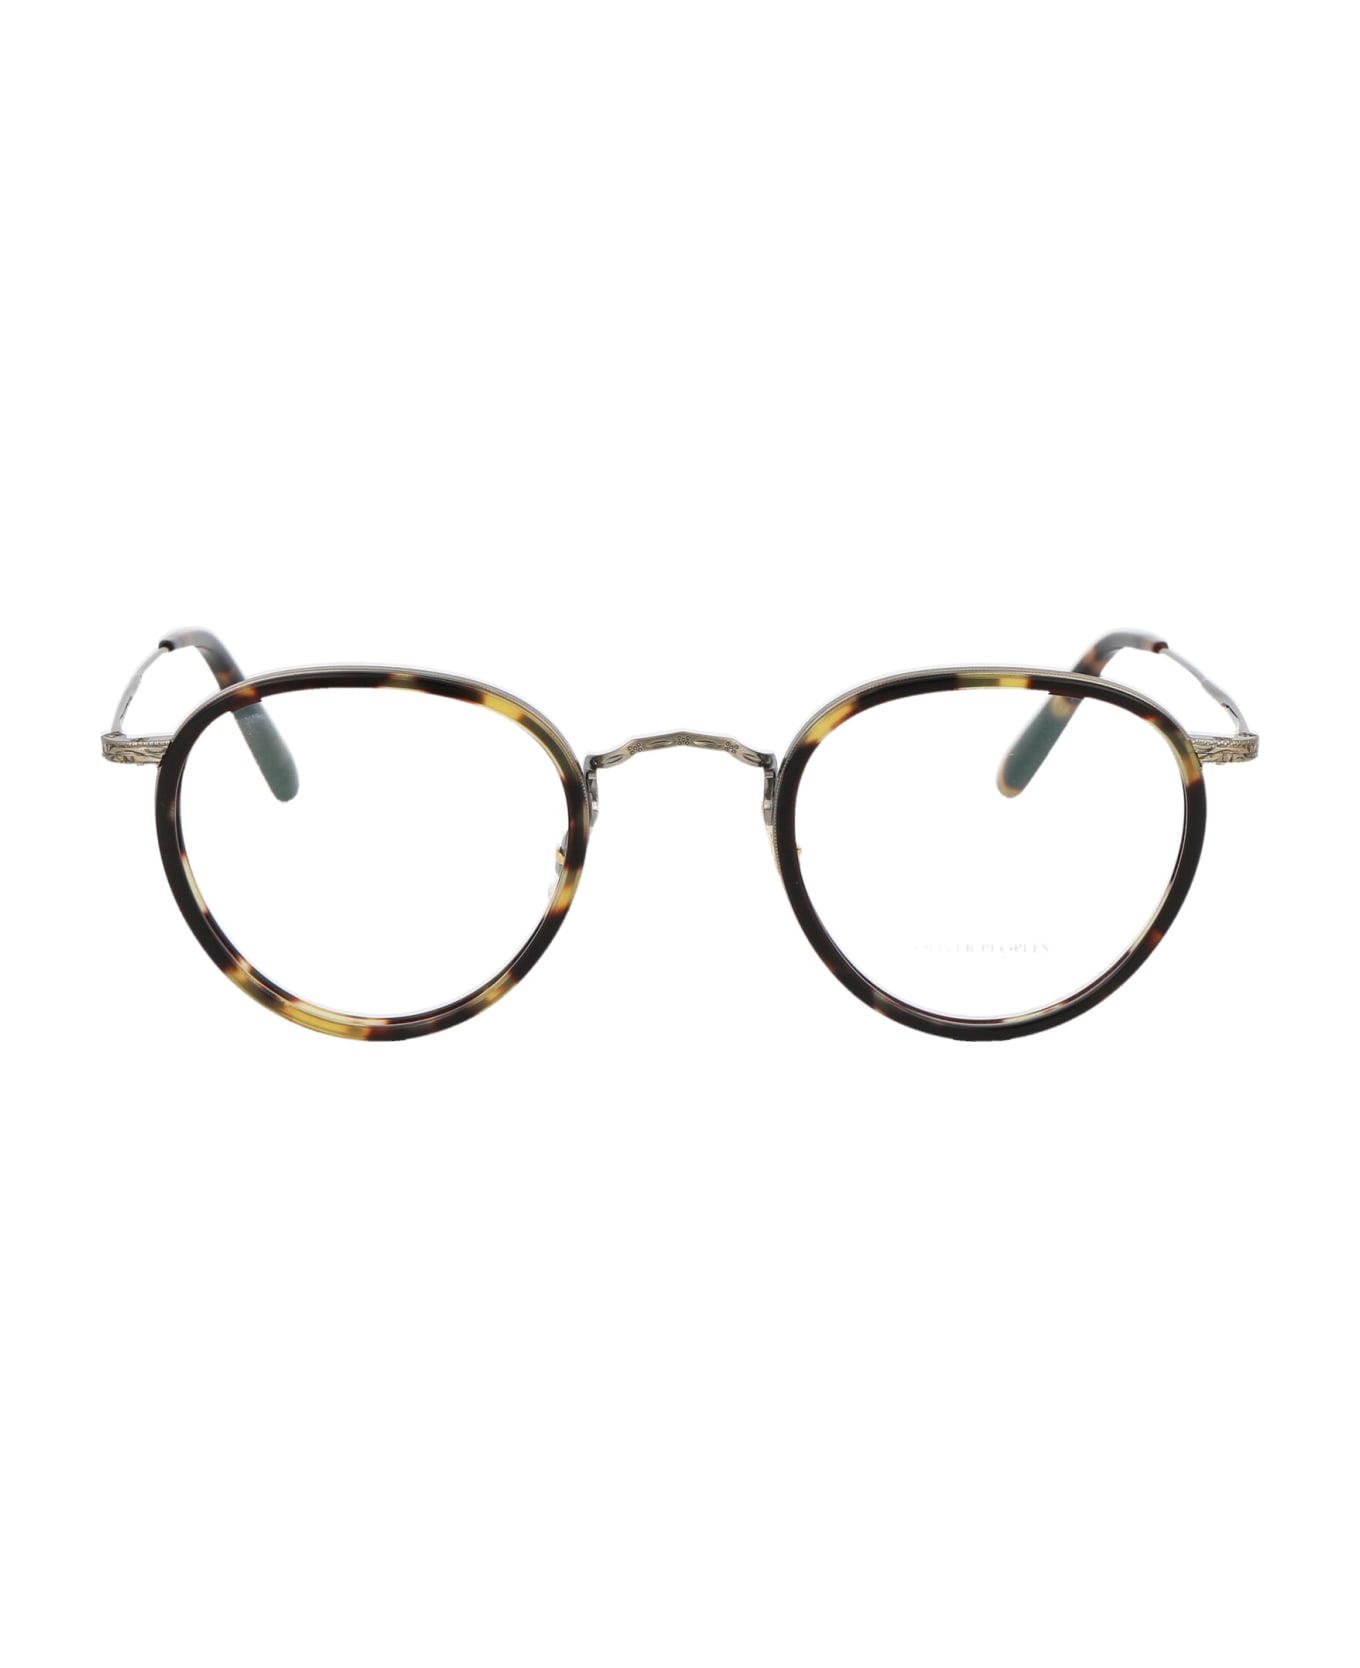 Oliver Peoples Mp-2 Glasses - 5039 Vintage DTB-Antique Gold